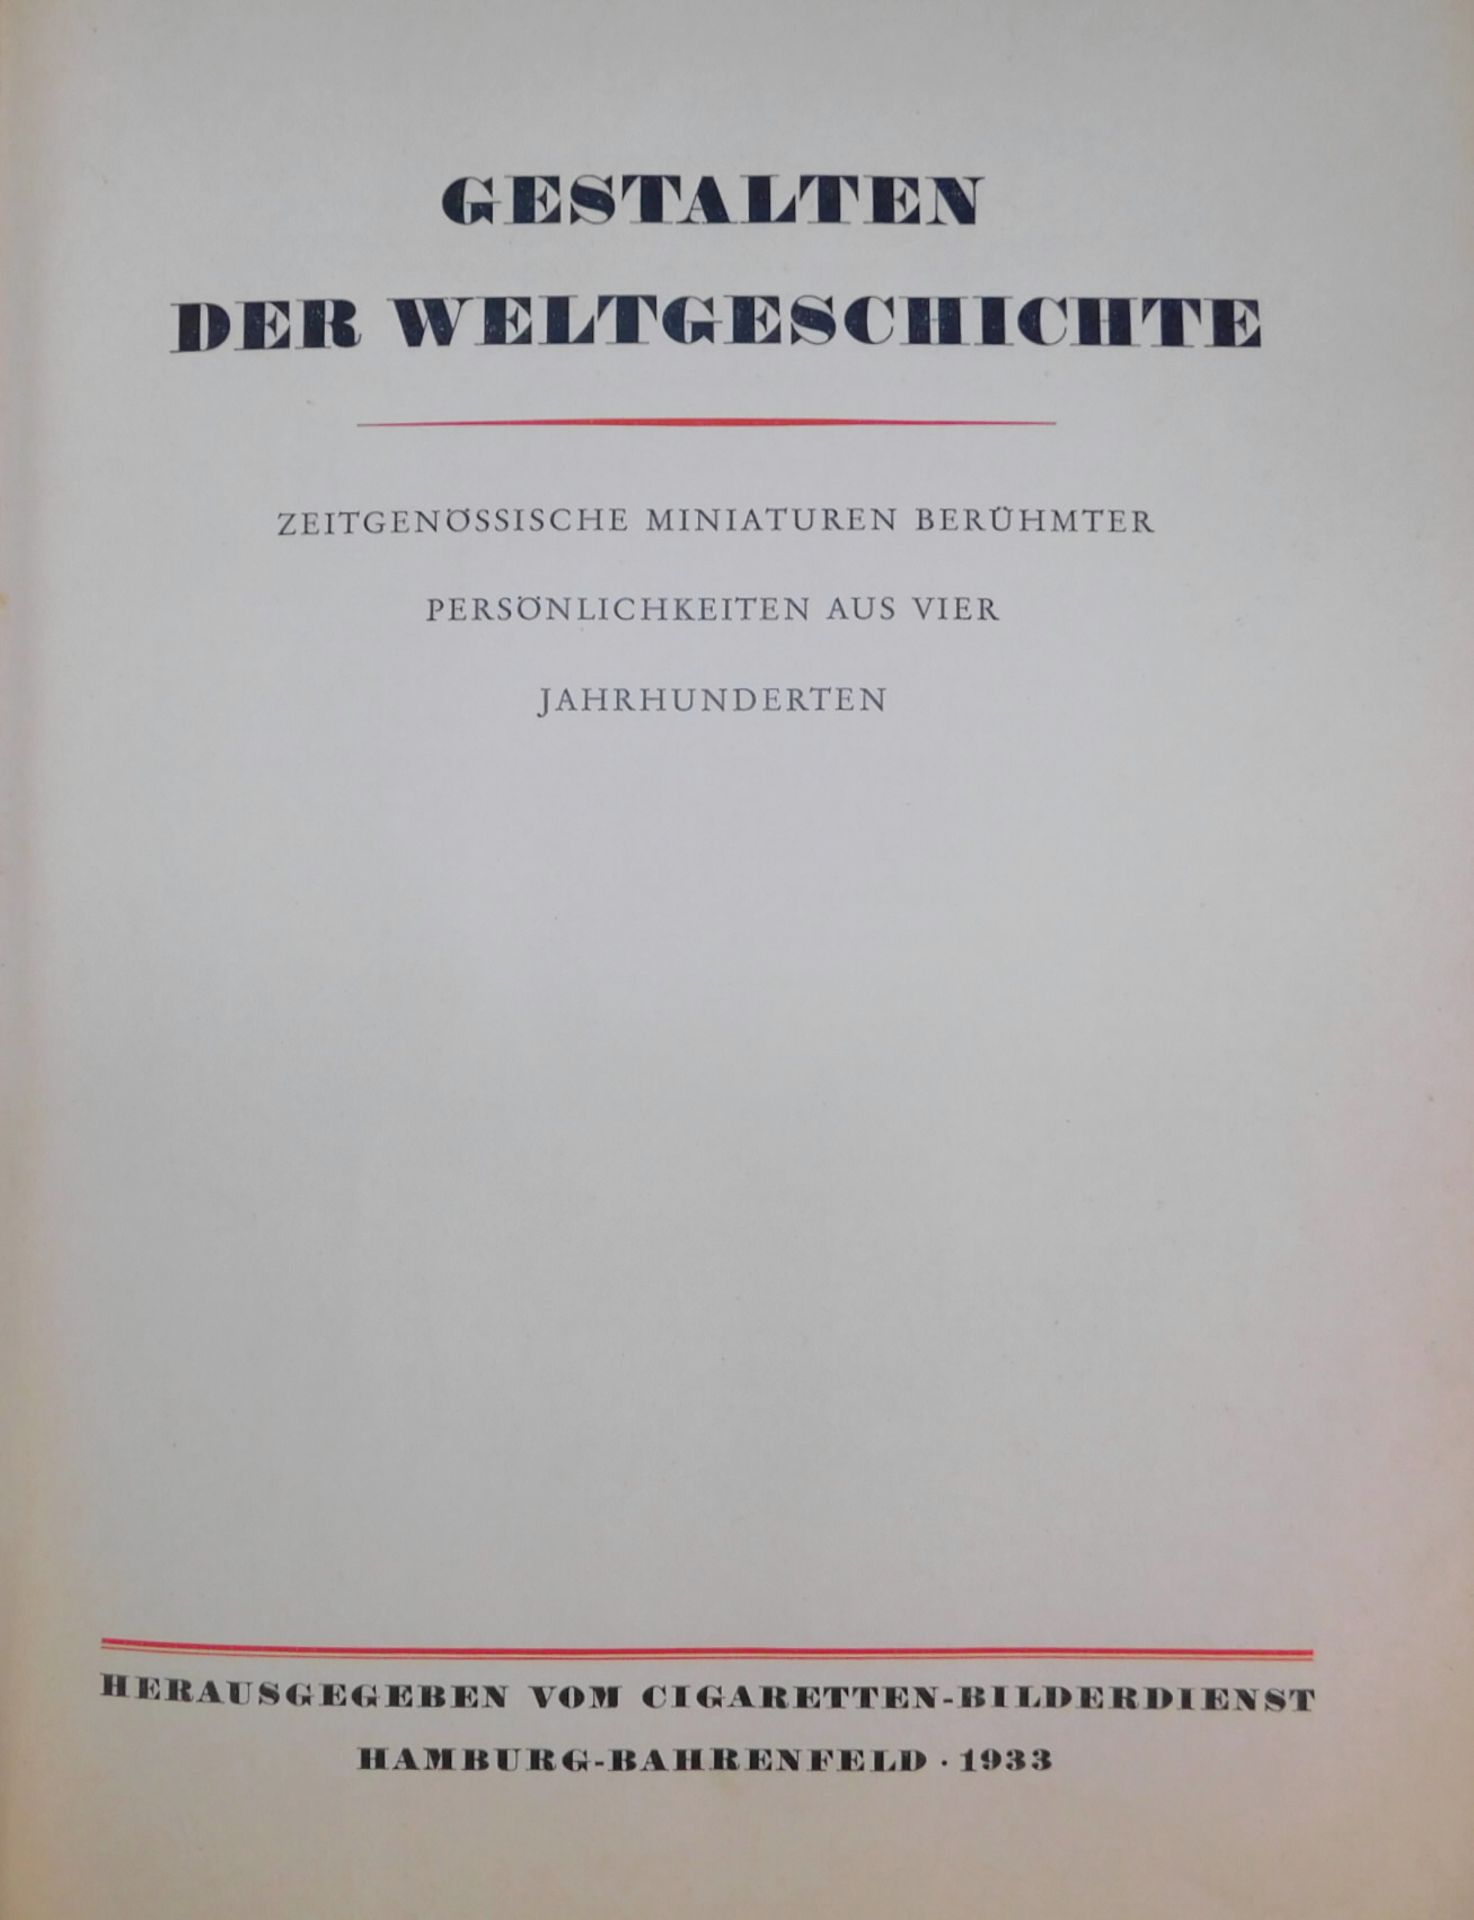 Sammelalbum gebunden "Gestalten der Weltgeschichte", 1933, Cigaretten Bilderdienst, Hamburg-Bahr - Bild 3 aus 4